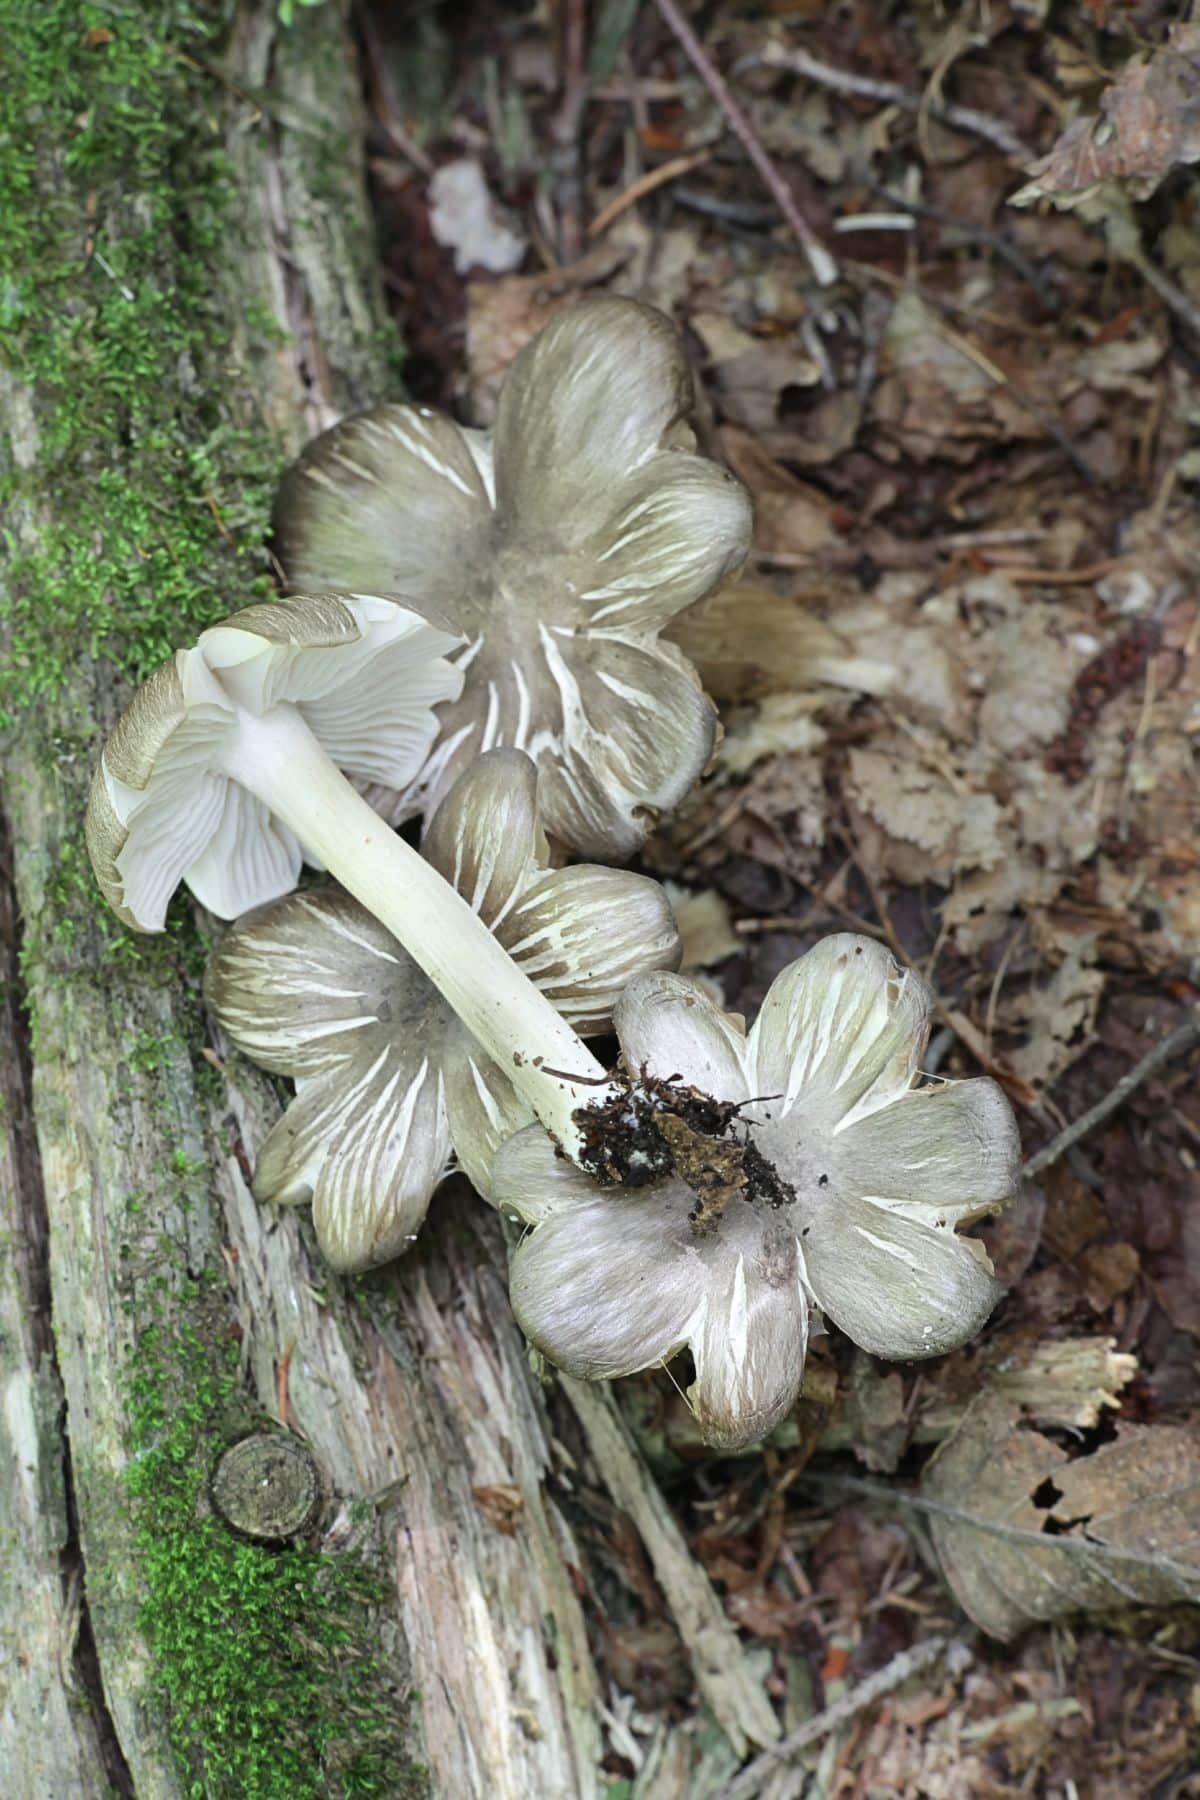 platterful mushroom group